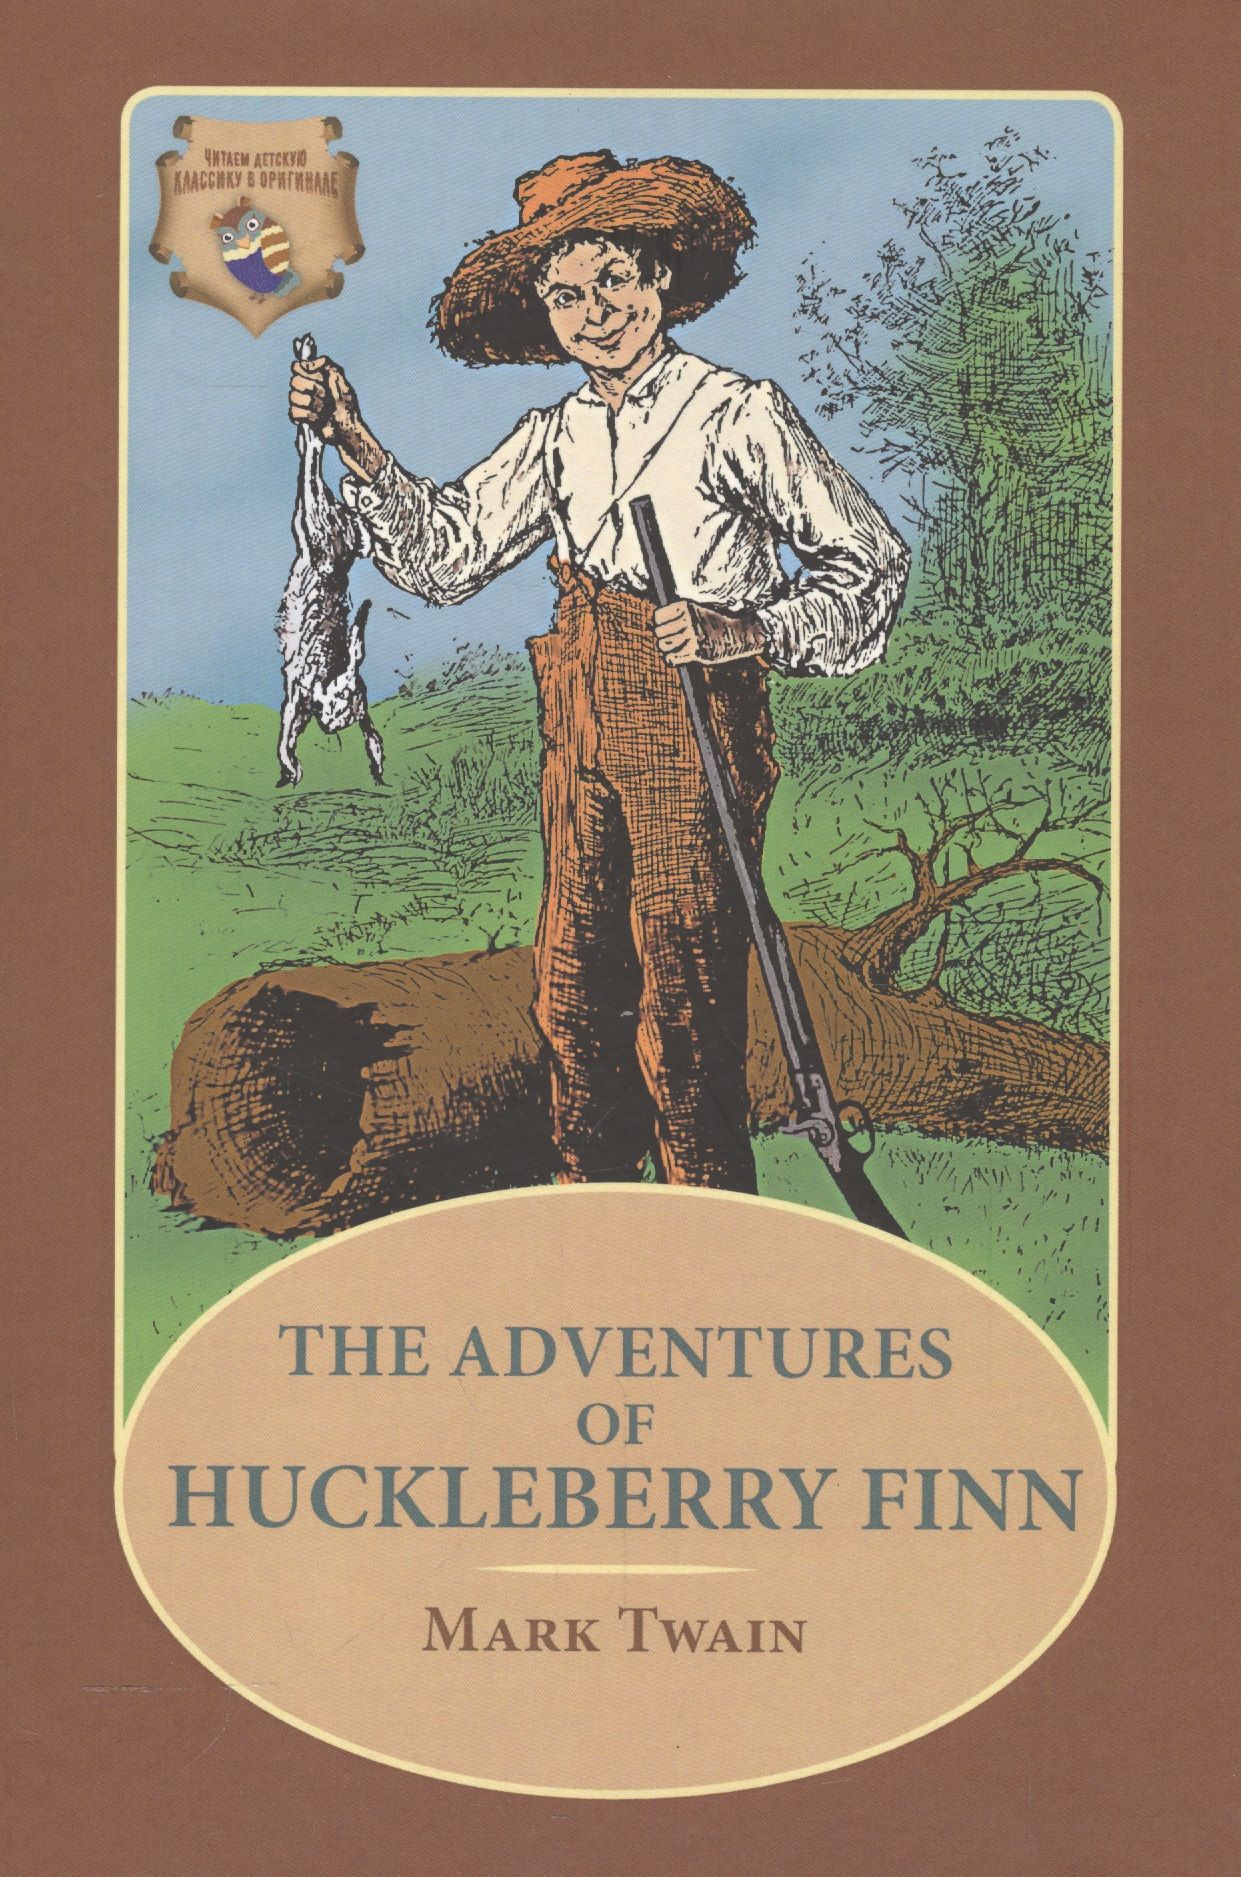 The adventures of huckleberry finn mark twain. Книжки марка Твена. Приключения Тома Сойера и Гекльберри Финна. Приключение гекельберифина книга.